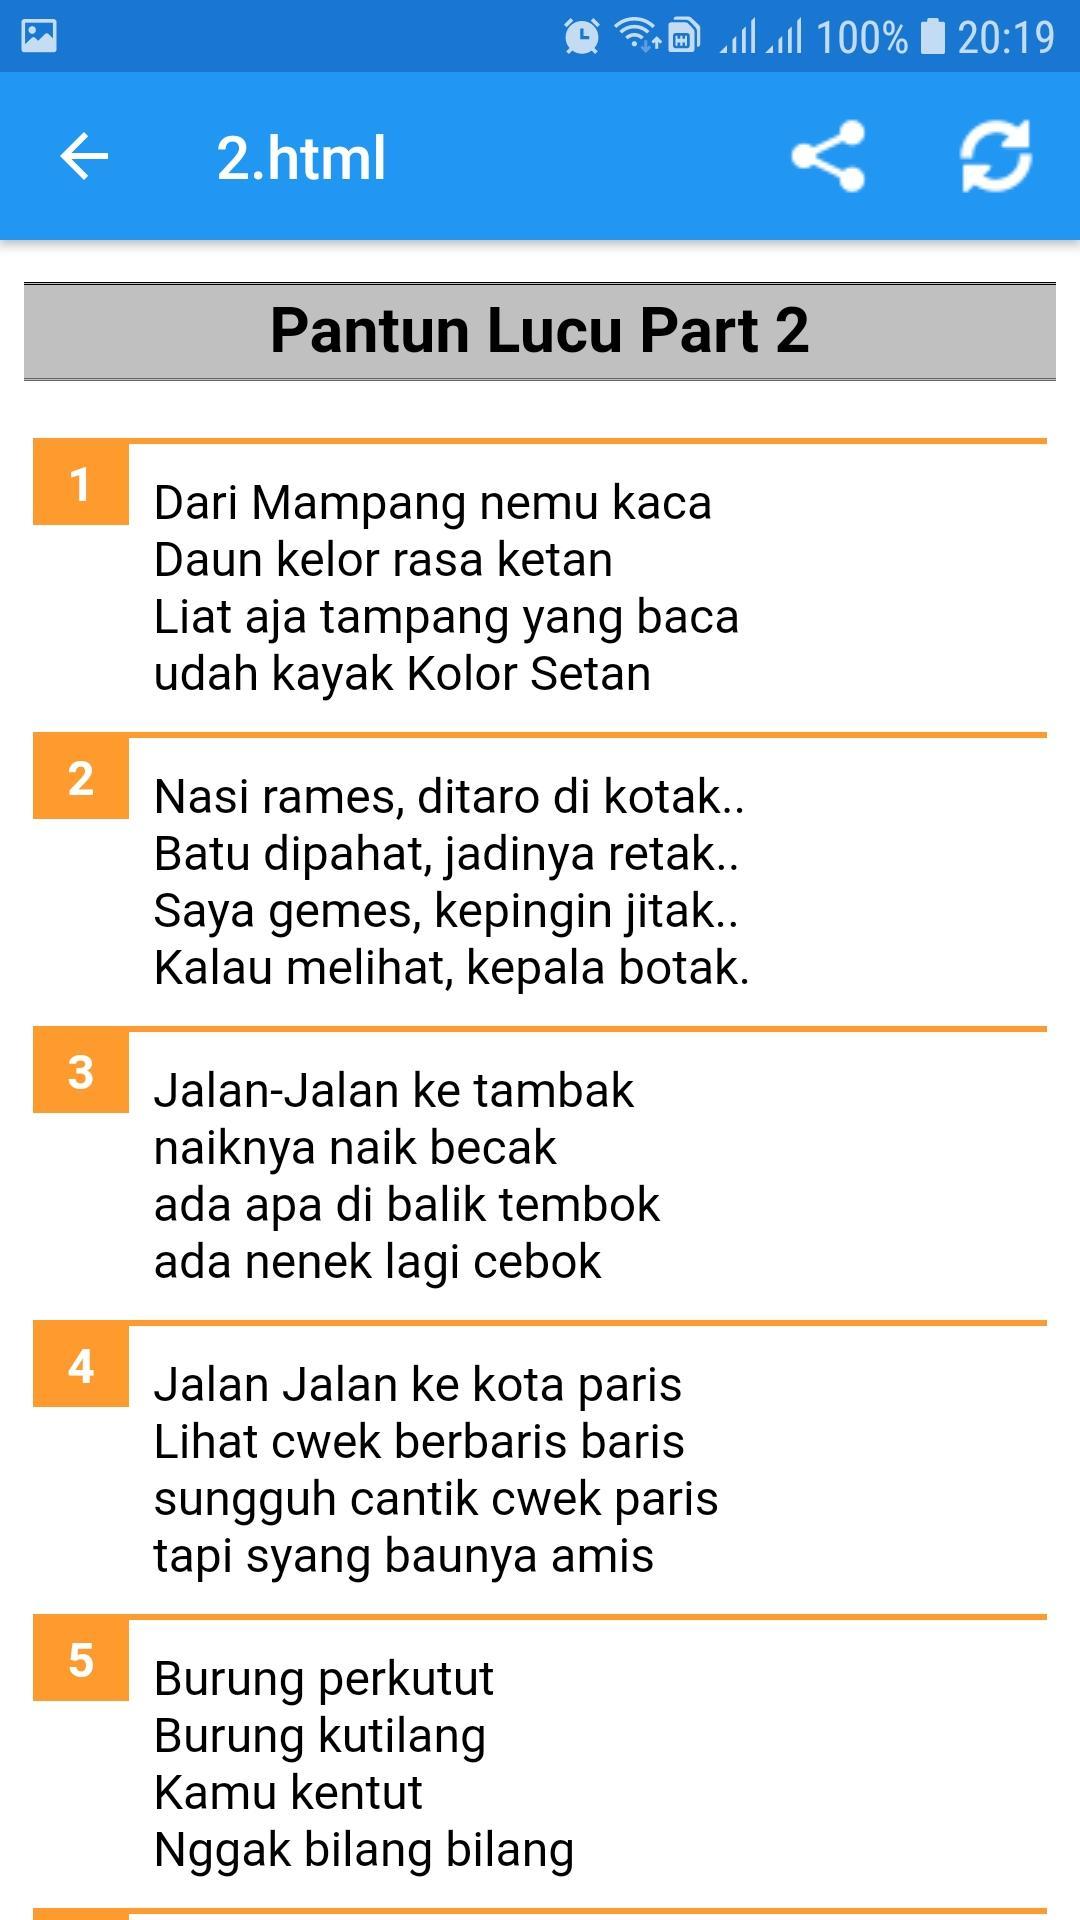 Kumpulan Pantun Lucu Gokil For Android APK Download